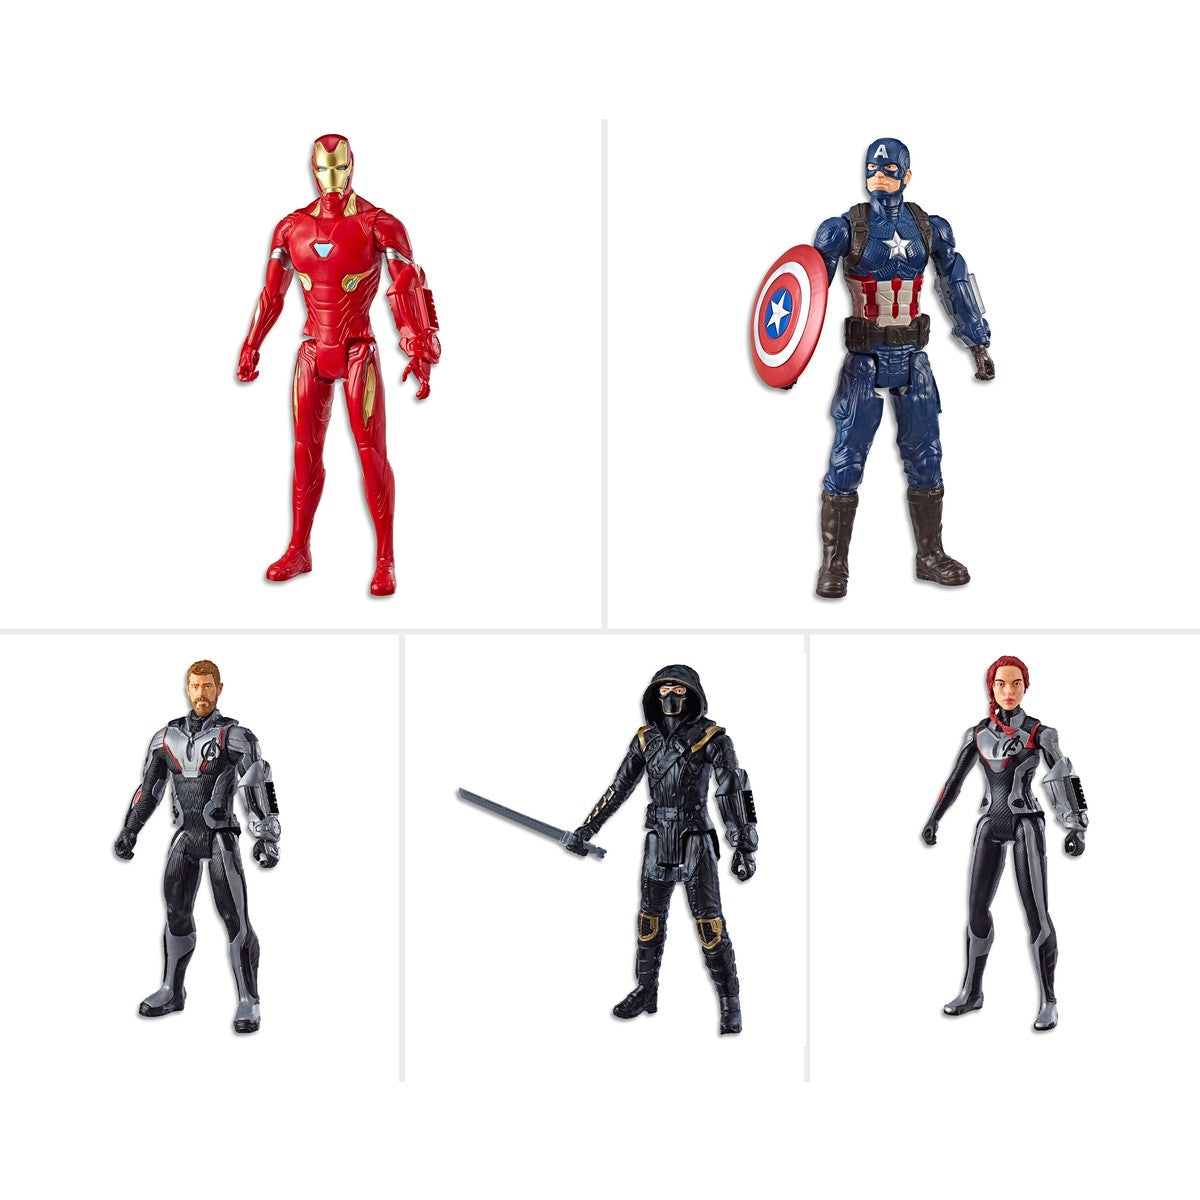 Avengers titan hero series